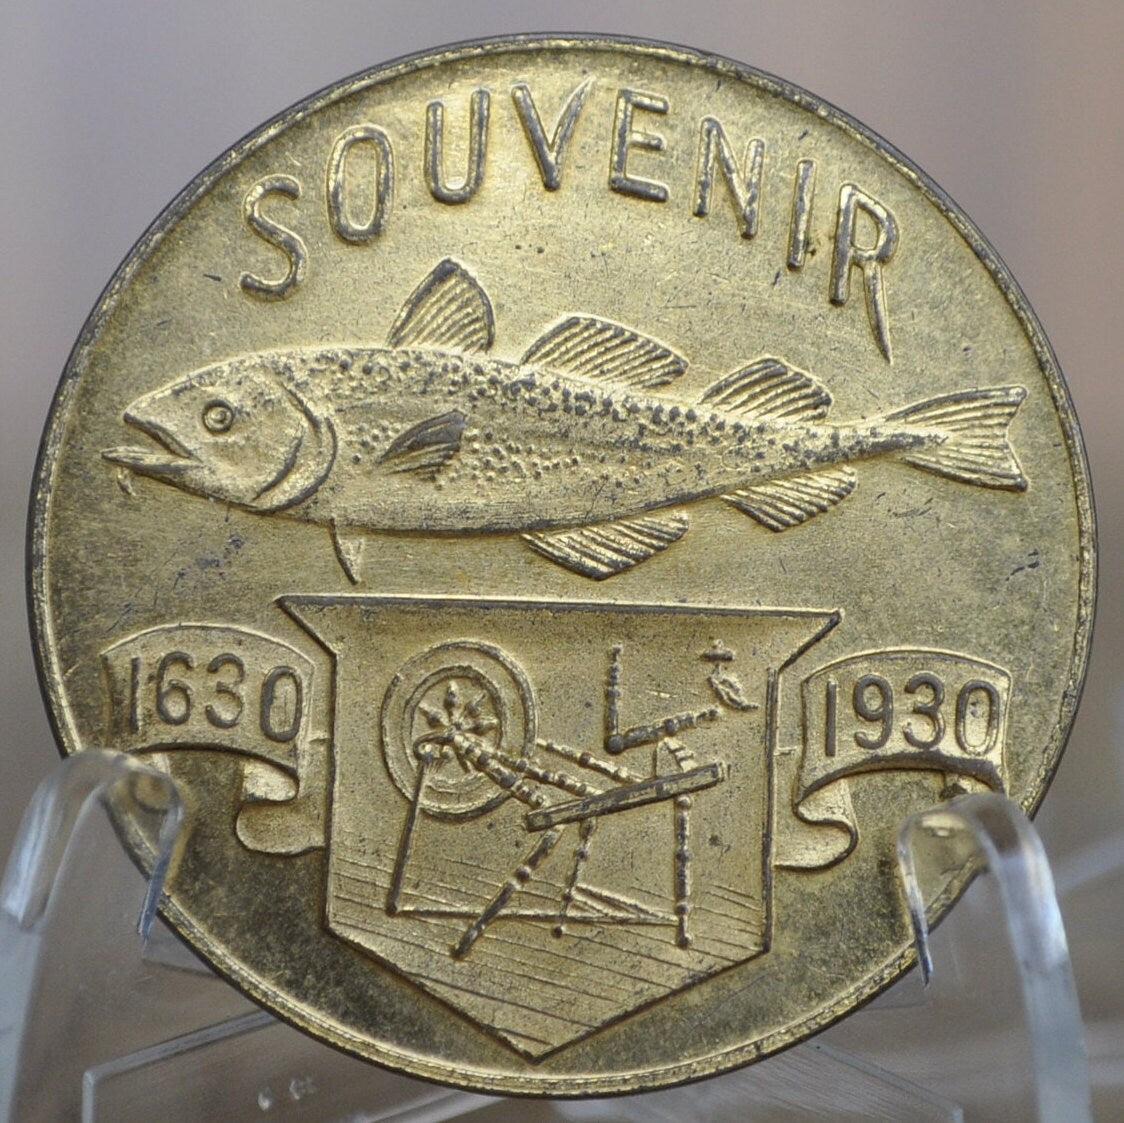 1930 Tercentenery of Massachusetts Bay Colony Medal - Bronze - Massachusetts Bay Anniversary Medal - Vintage Bronze Medal 1630-1930